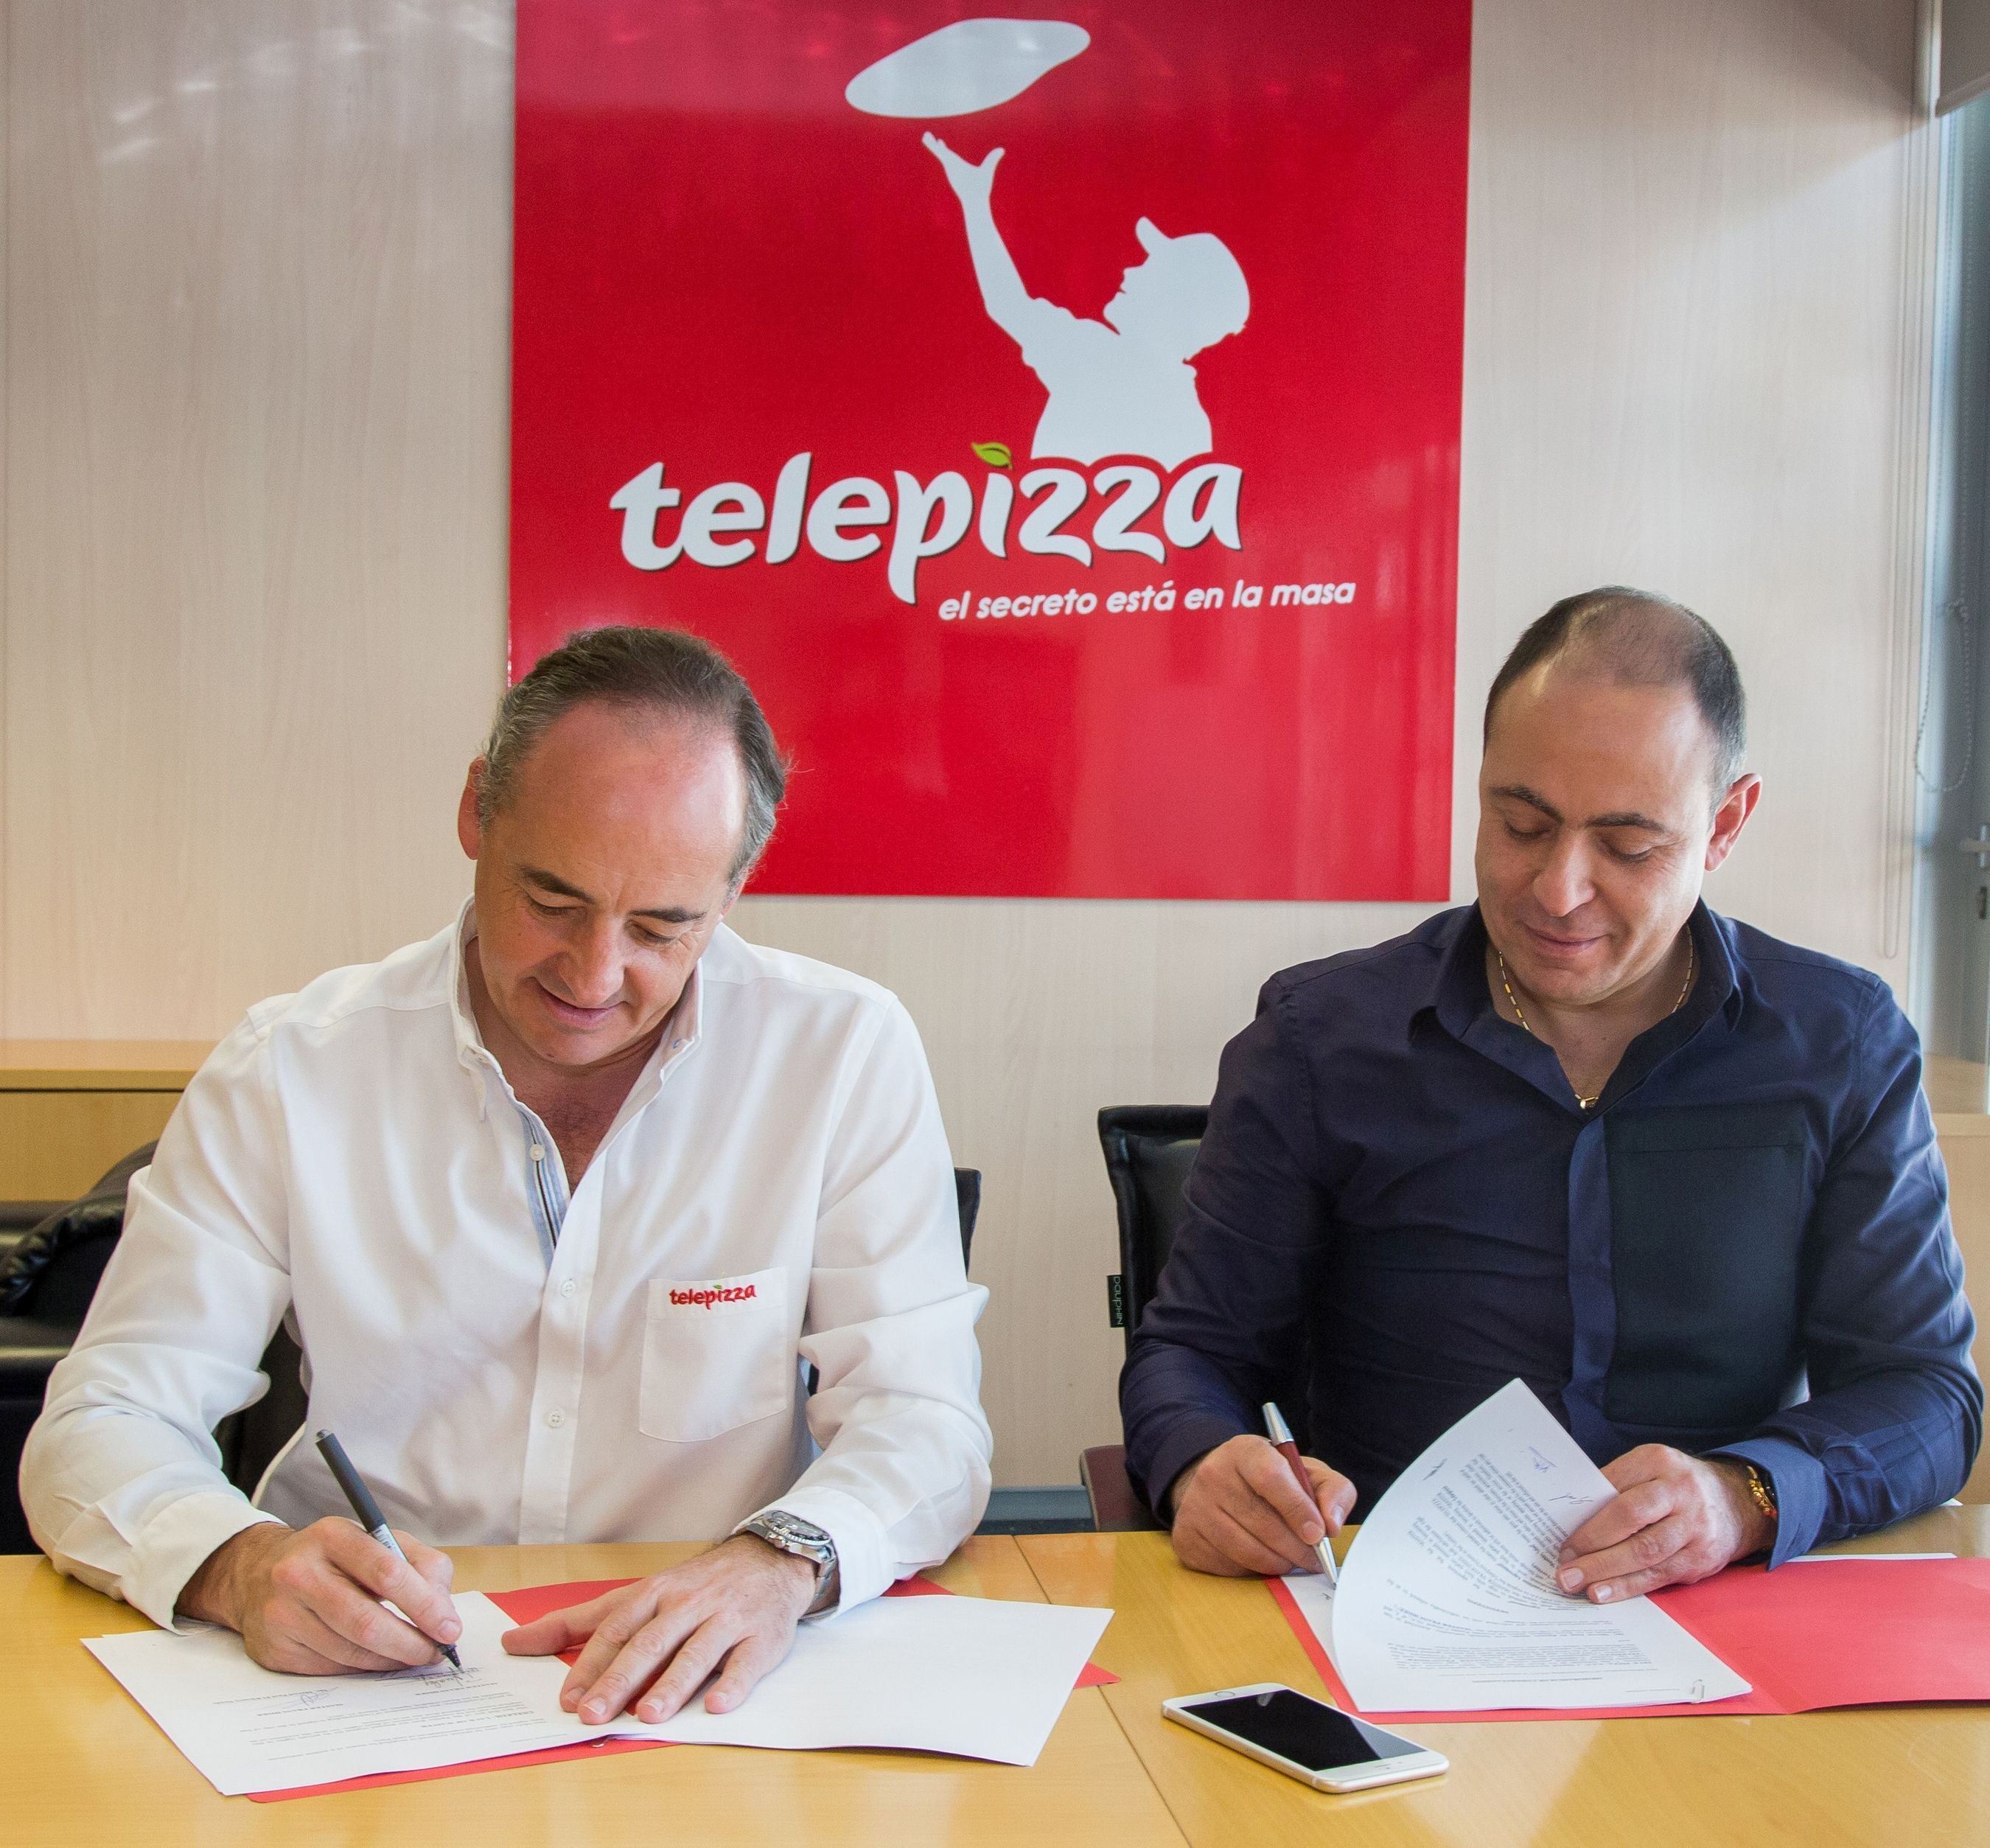 Pablo Juantegui, Consejero Delegado de Telepizza y Marcel Paul El Khoury Saade, representante del grupo inversor (PRNewsFoto/Telepizza)